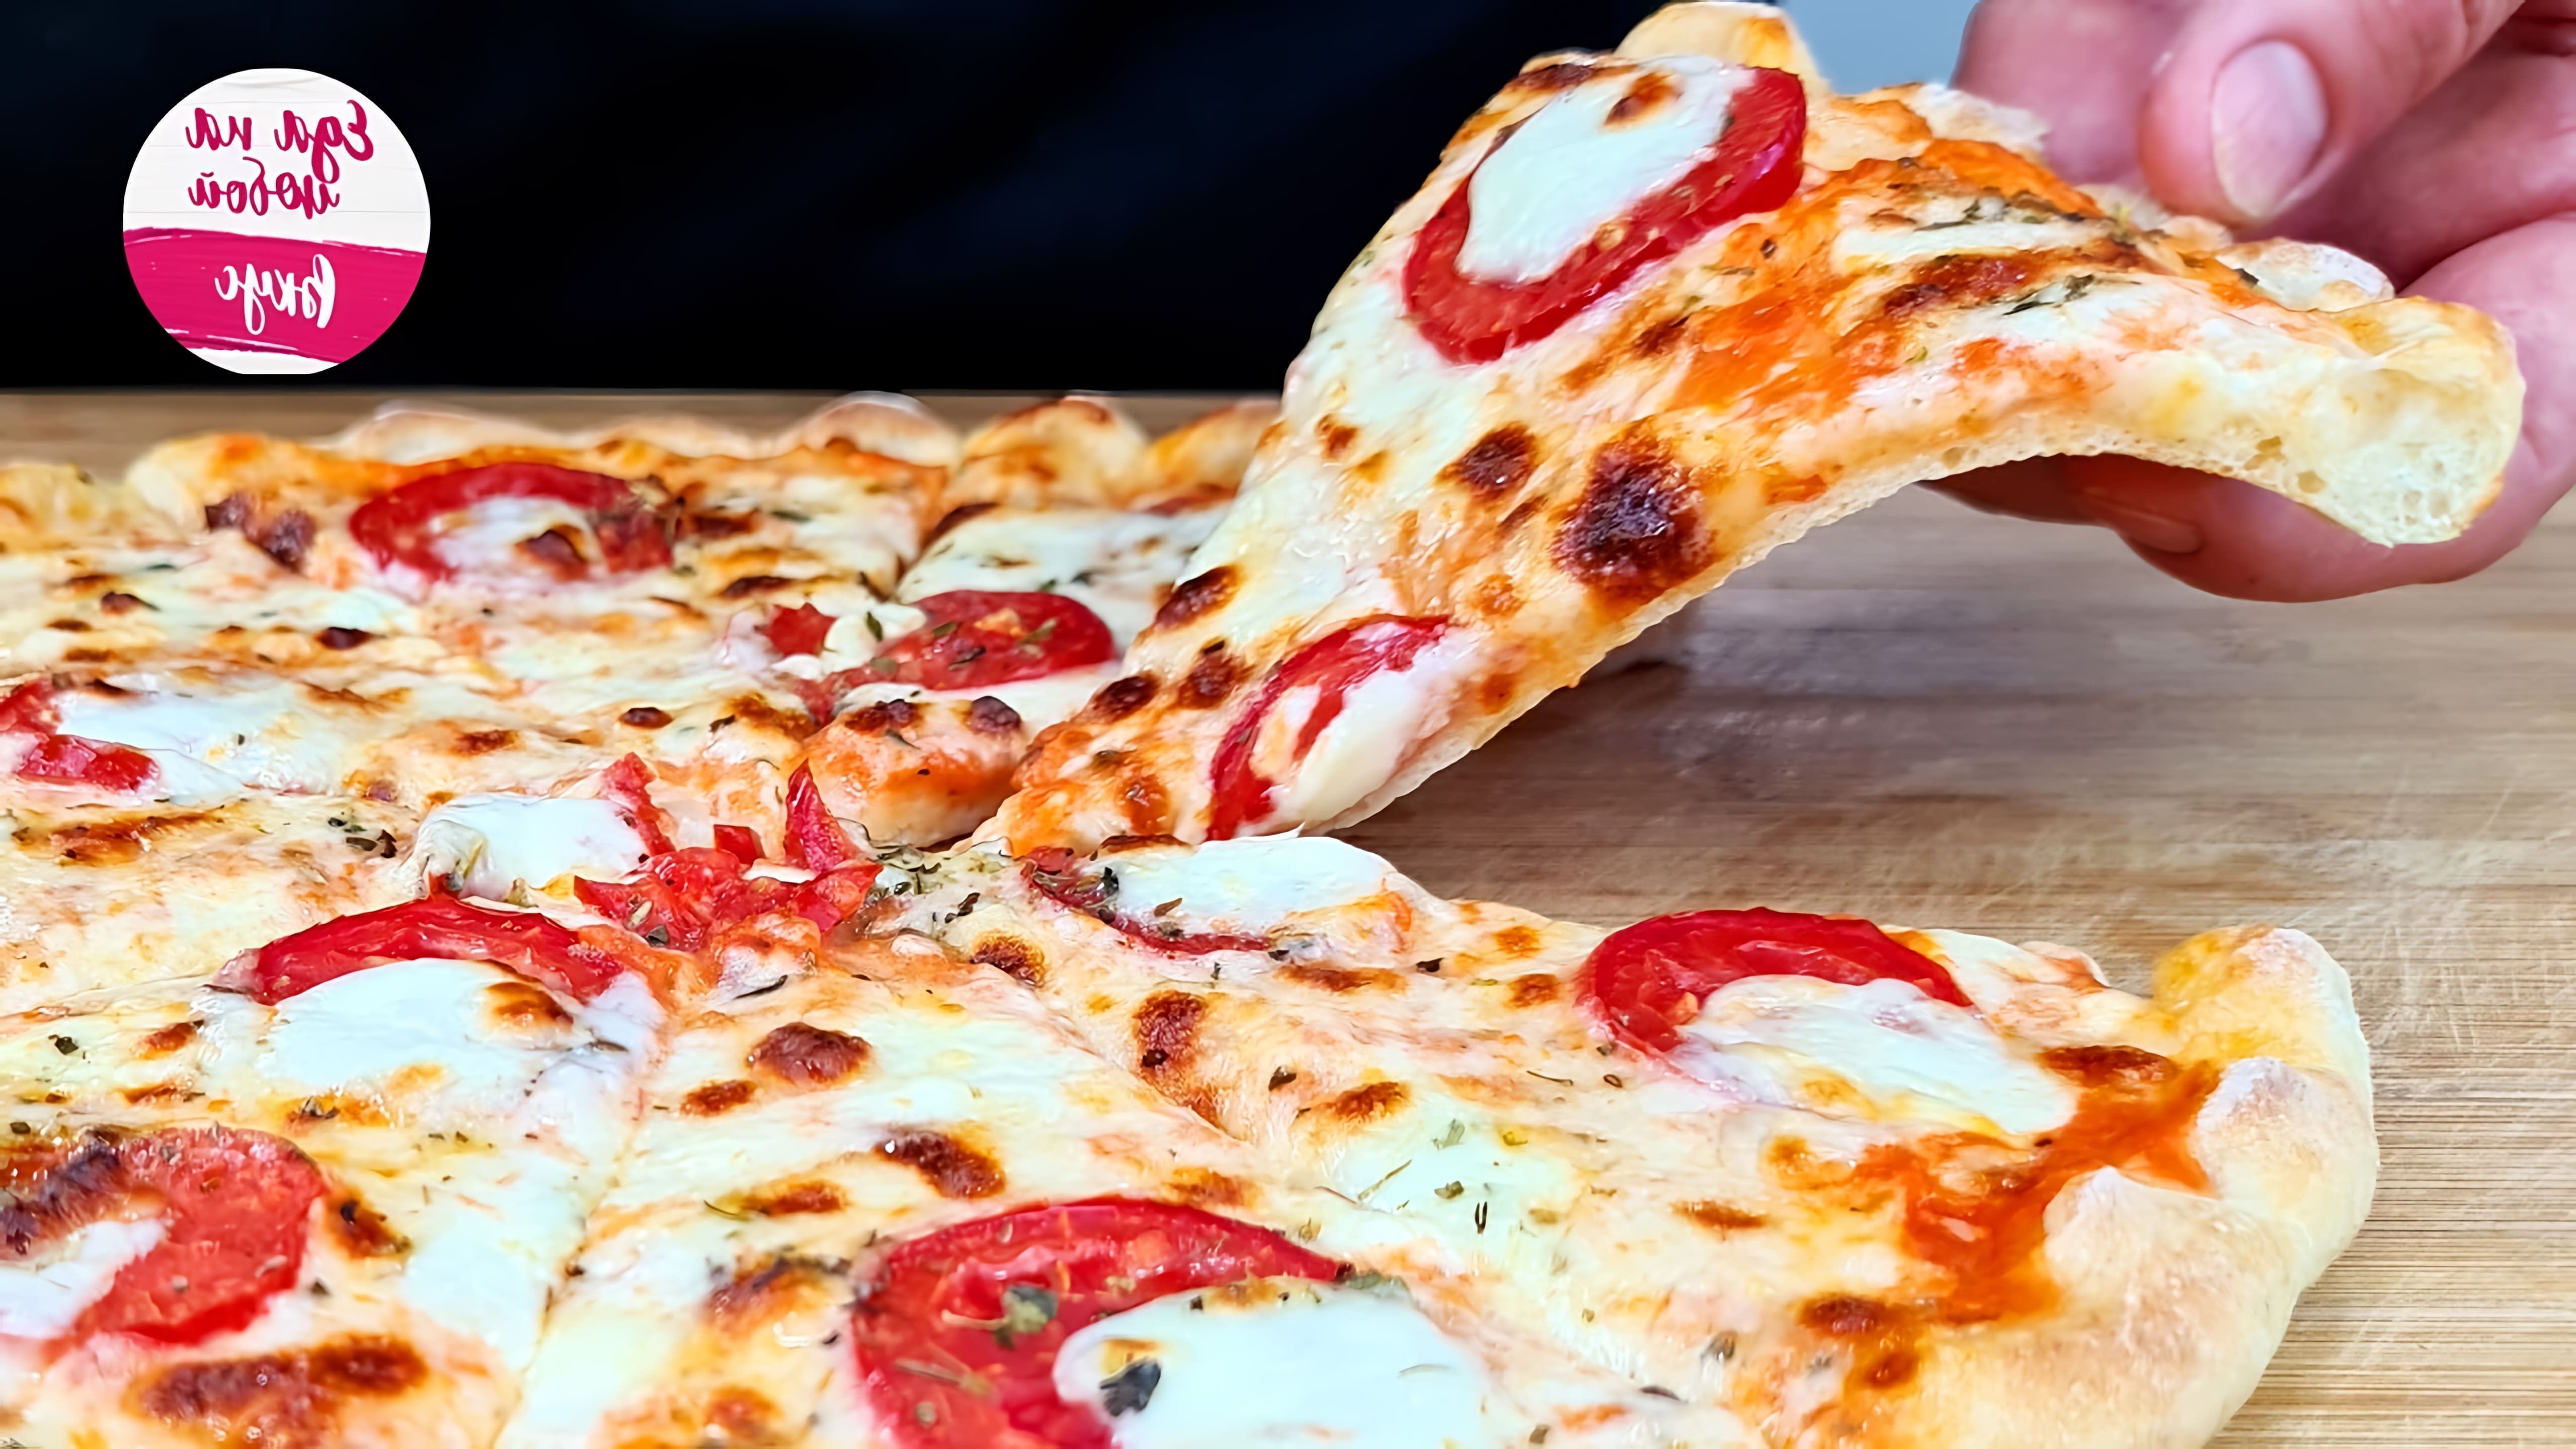 В этом видео демонстрируется рецепт приготовления сочной пиццы на тонком тесте